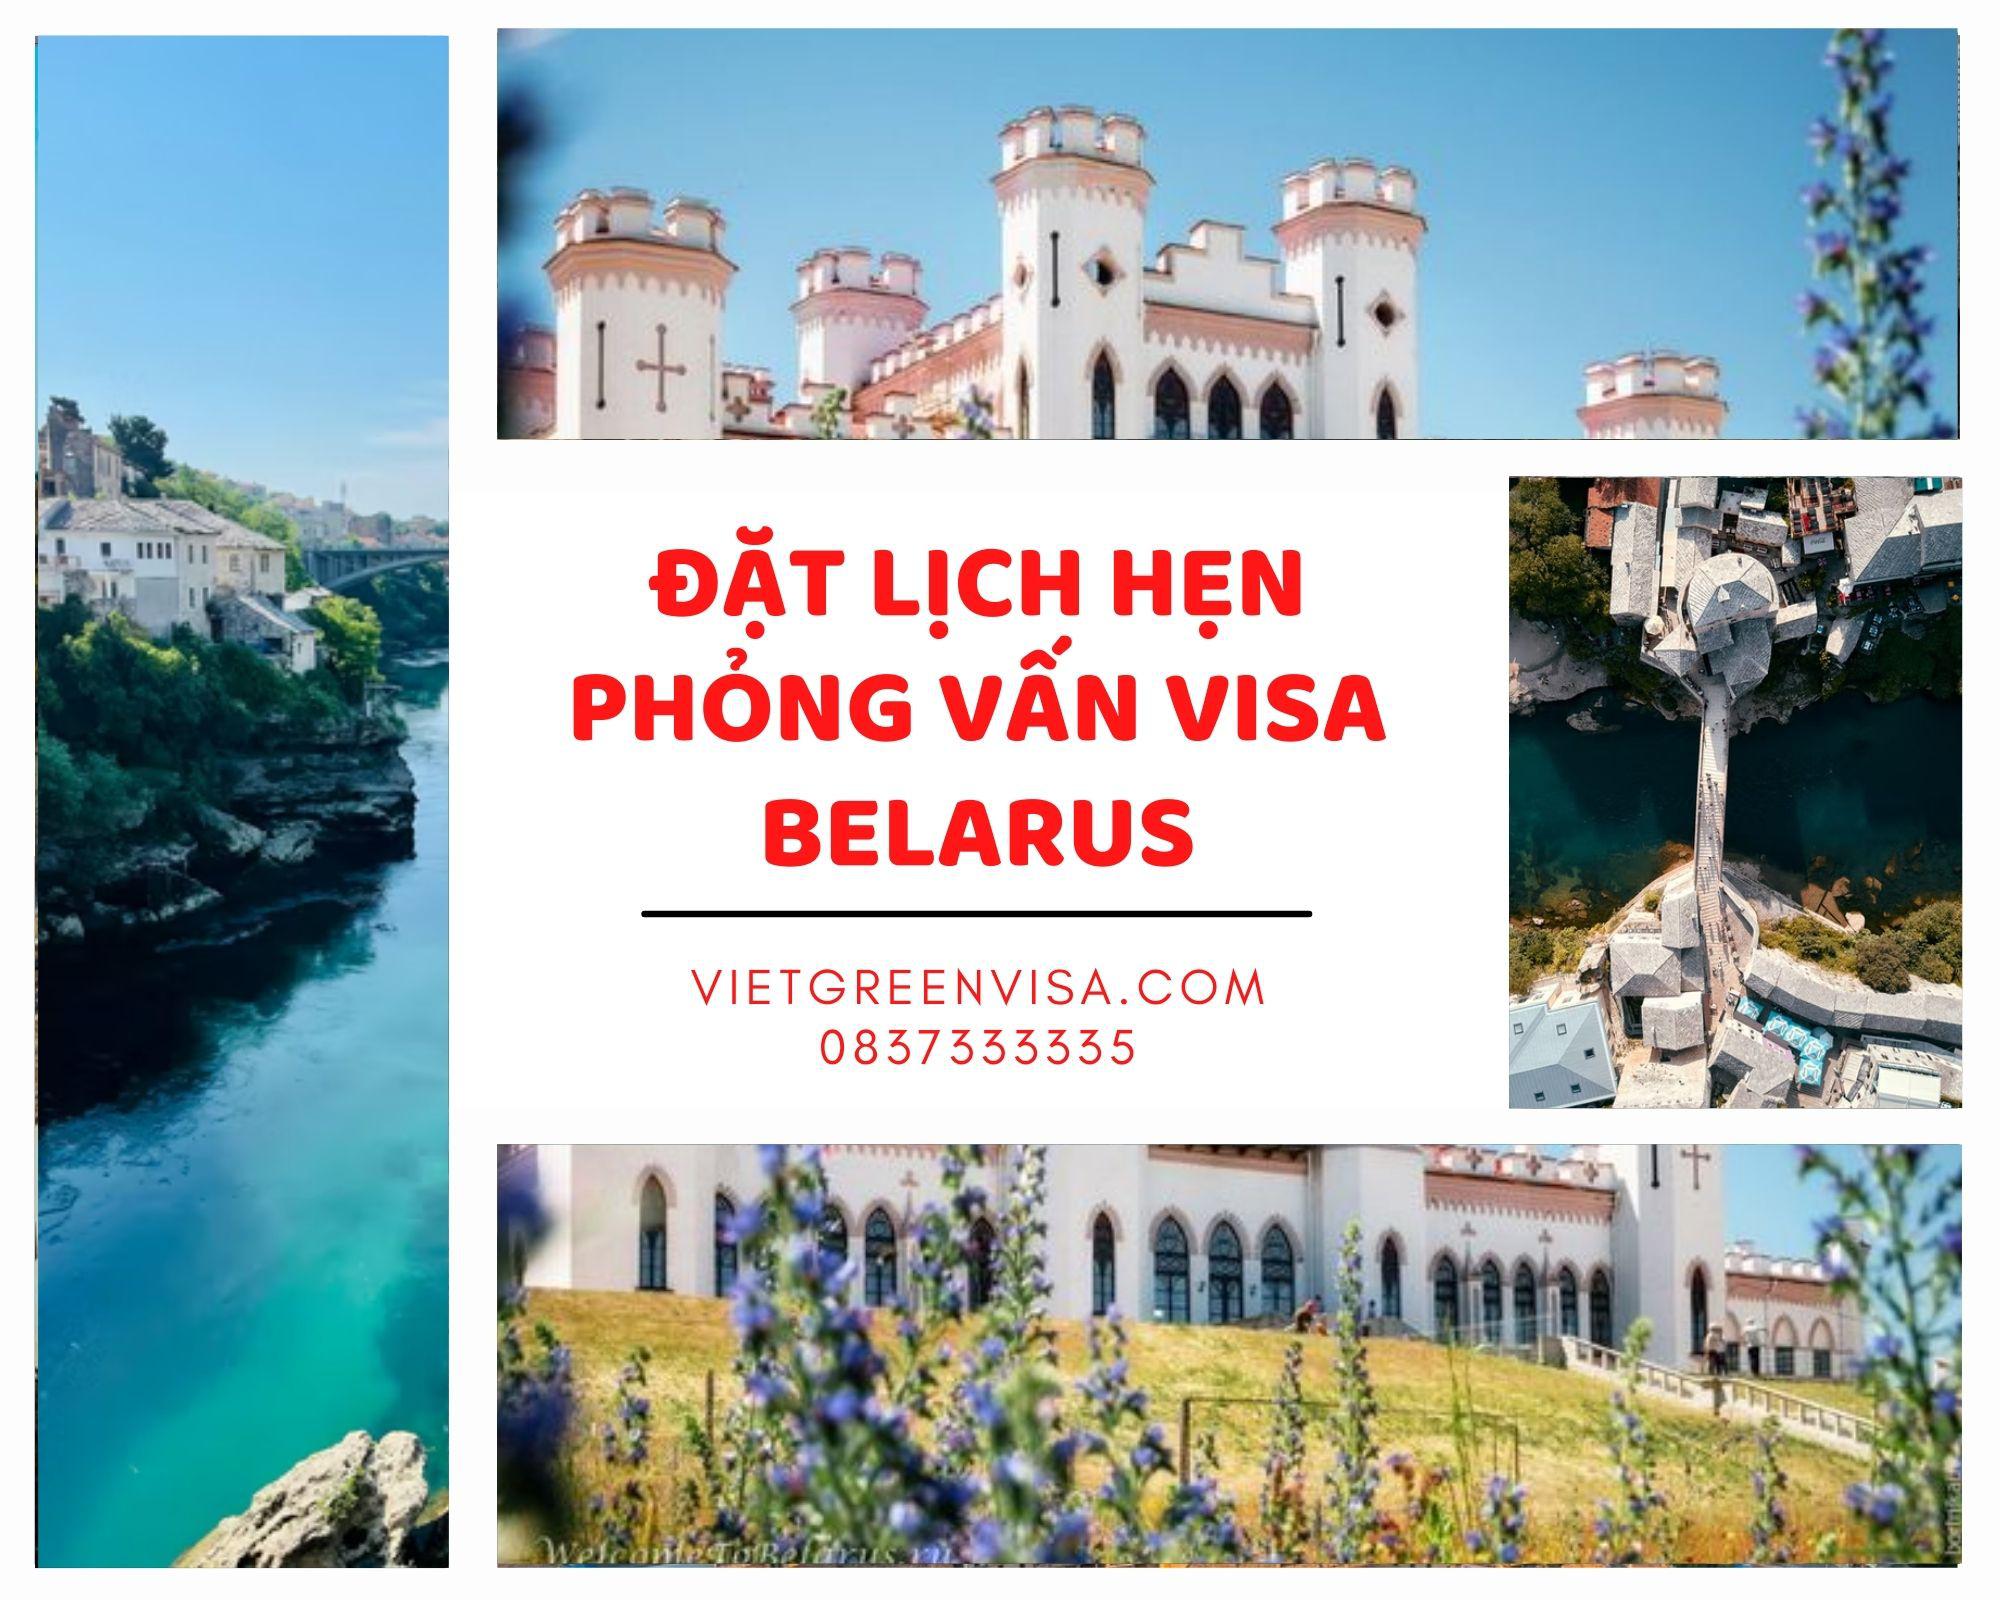 Viet Green Visa, đặt lịch hẹn xin visa Belarus, visa Belarus